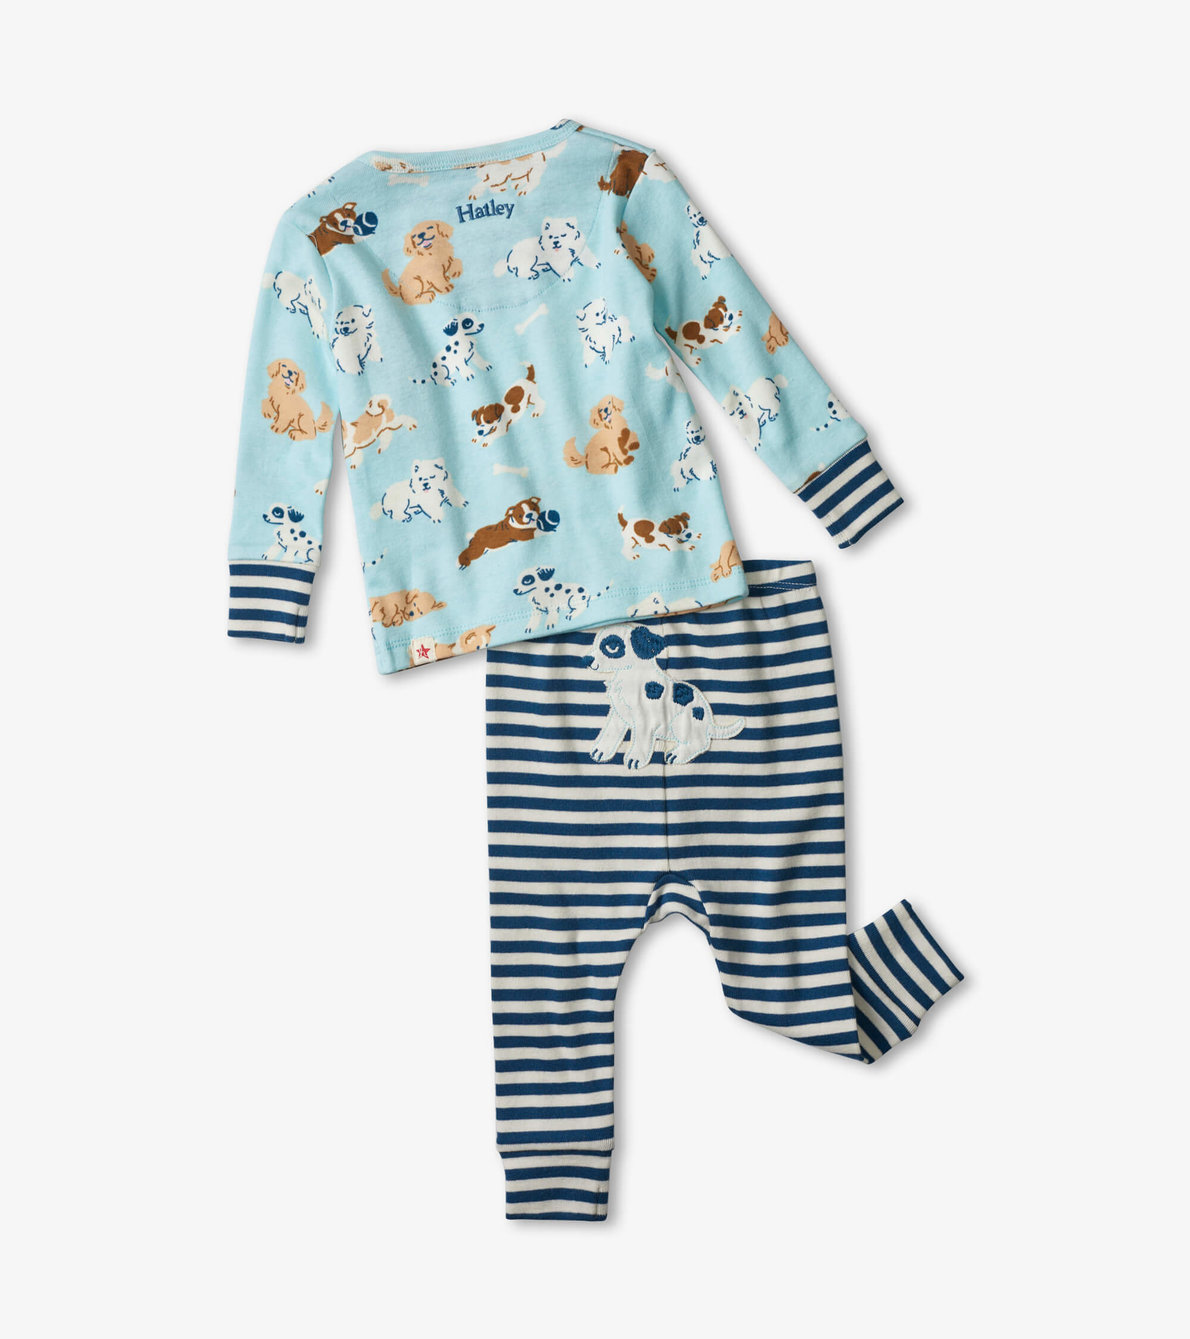 View larger image of Tender Pups Organic Cotton Baby Pajama Set